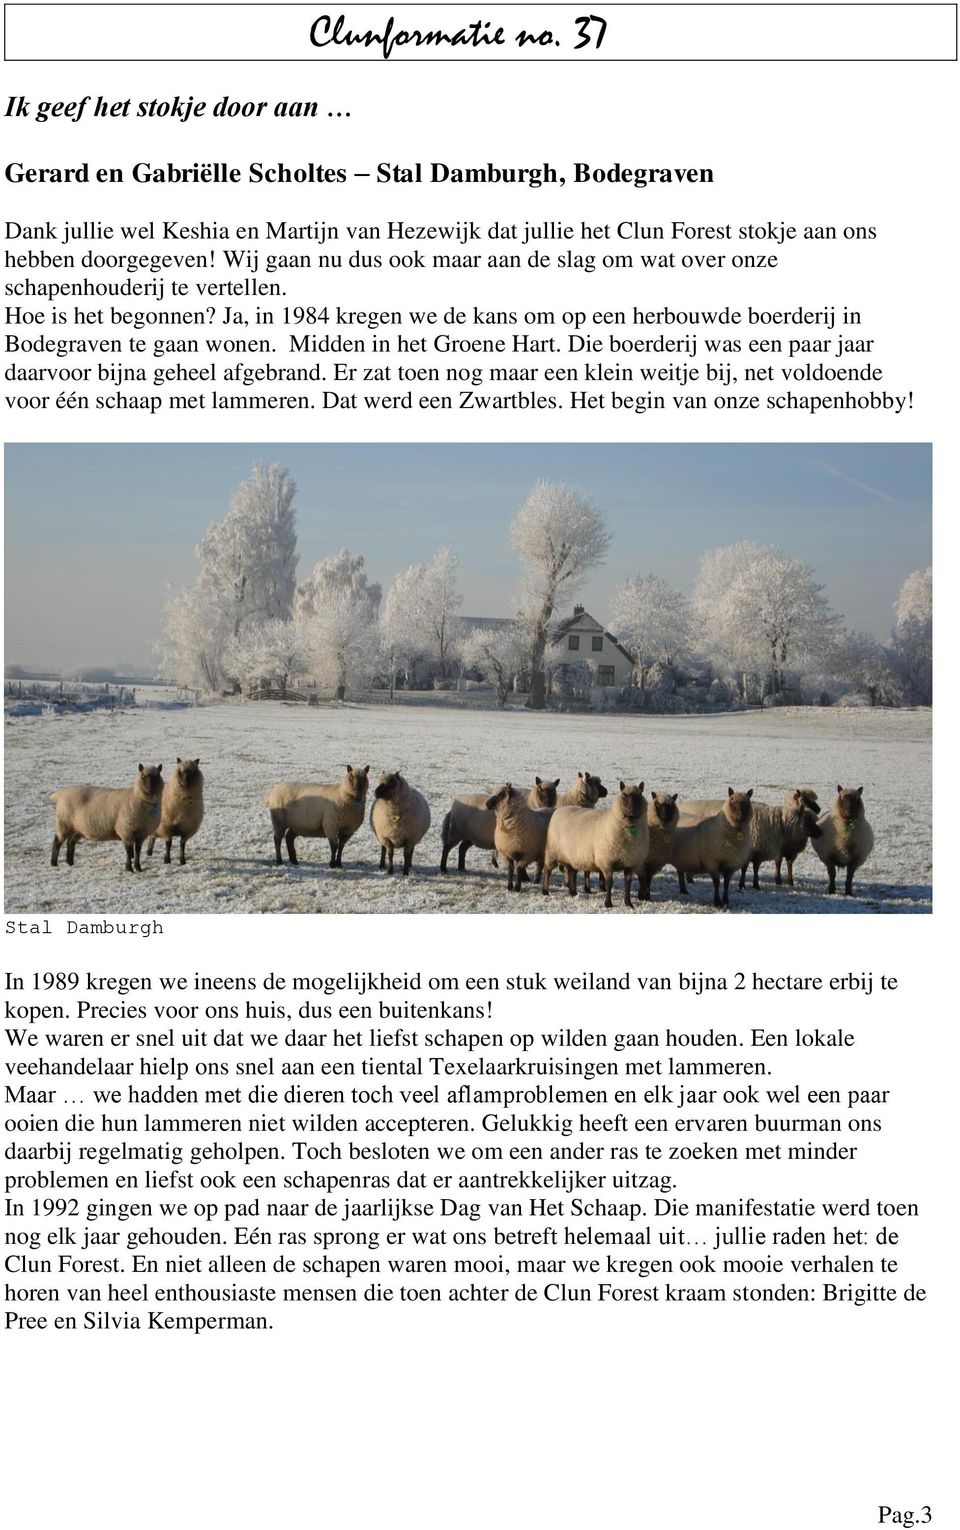 Wij gaan nu dus ook maar aan de slag om wat over onze schapenhouderij te vertellen. Hoe is het begonnen? Ja, in 1984 kregen we de kans om op een herbouwde boerderij in Bodegraven te gaan wonen.